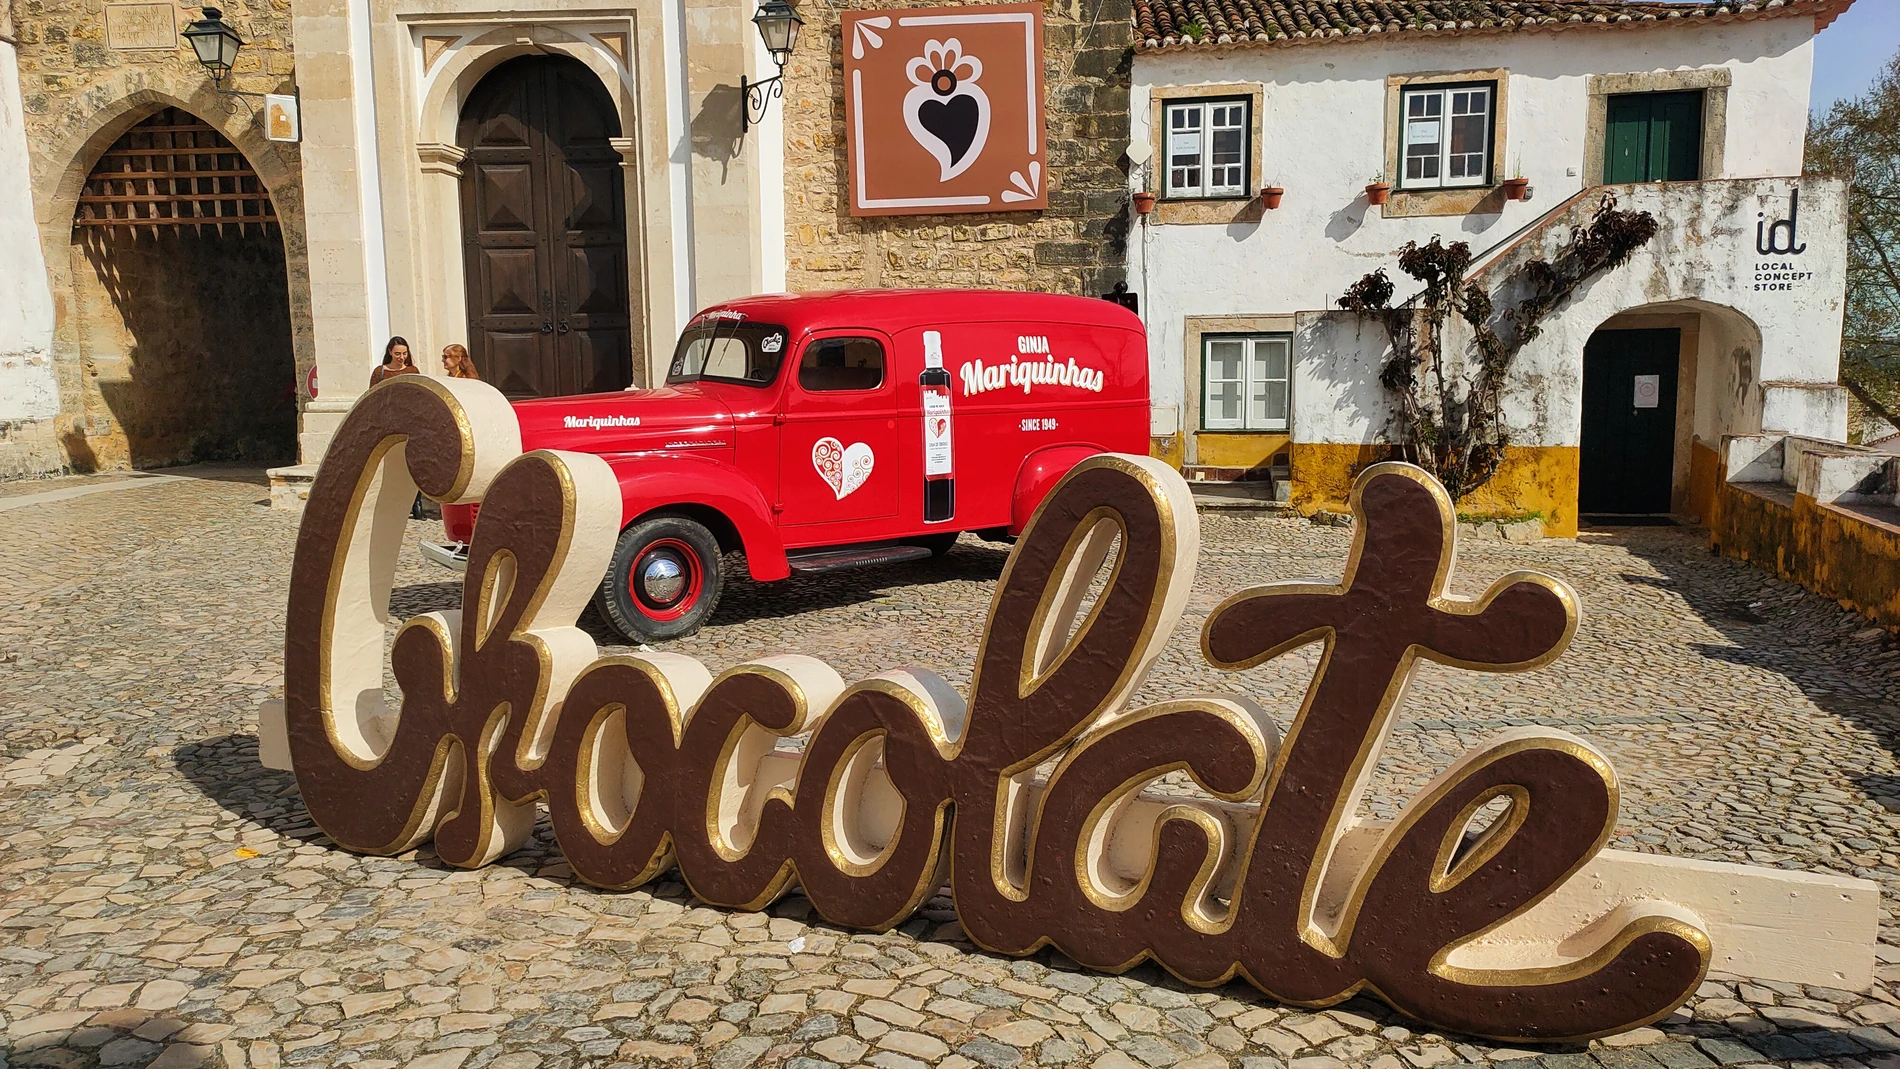 La puerta principal de entrada a la ciudad medieval ya nos anuncia el Festival del Chocolate